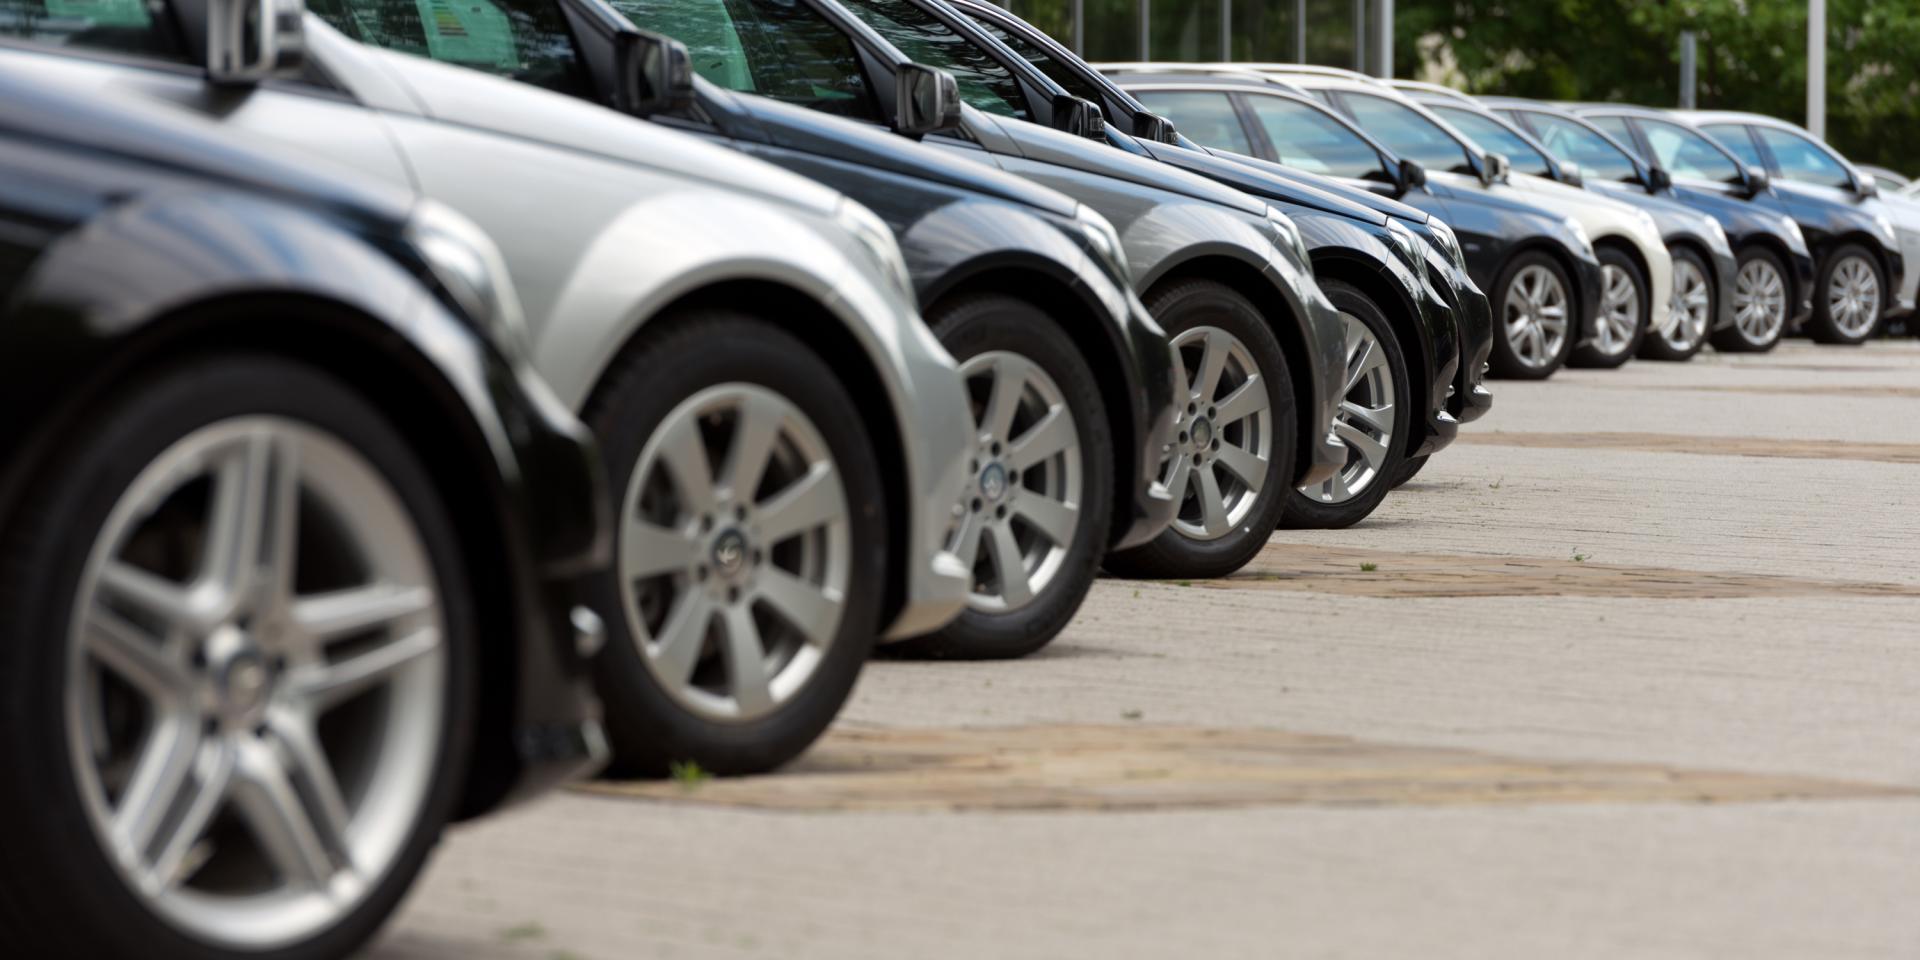 Automobile: léger sursaut des ventes en août